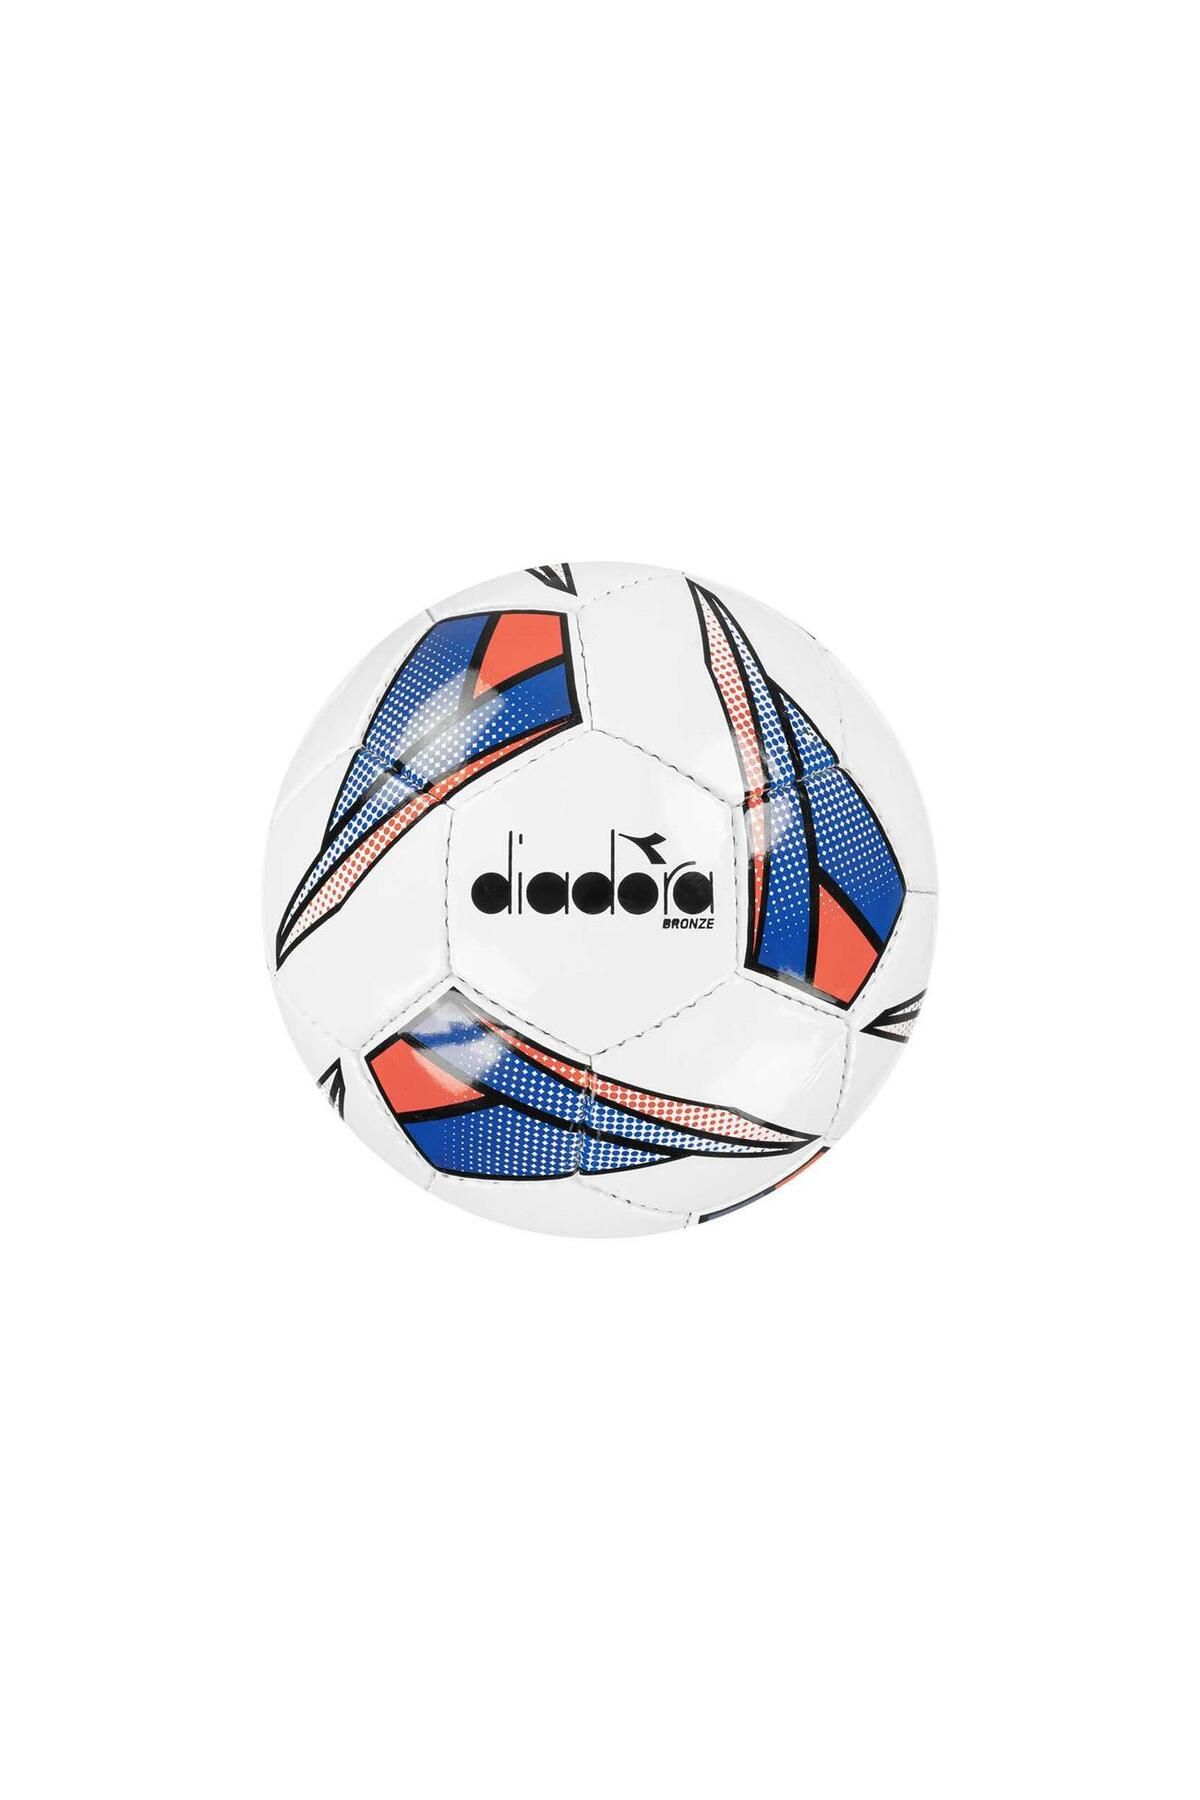 Diadora 4060205 Bronze Futbol Topu Beyaz-mavi-kırmızı